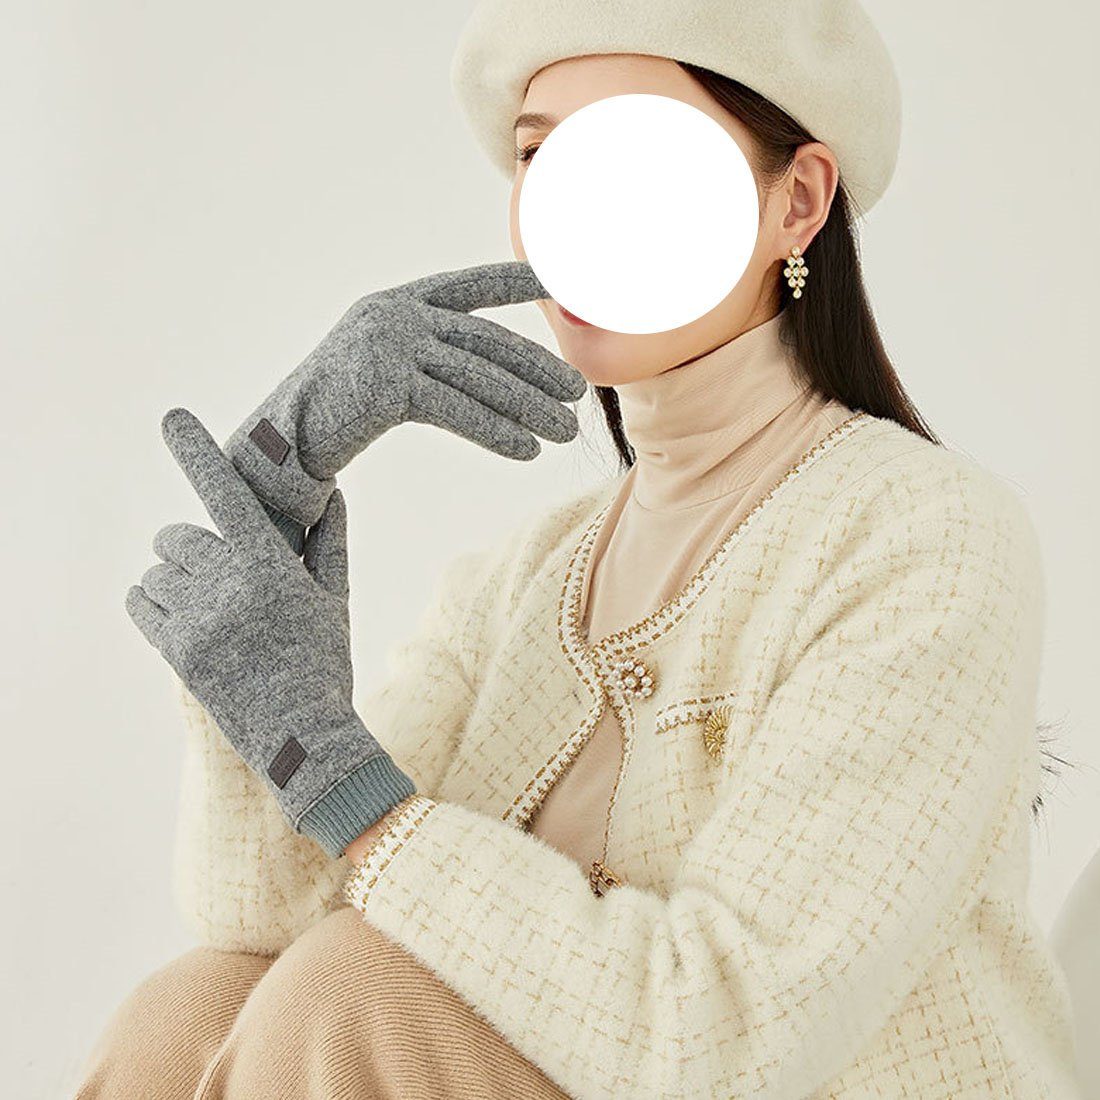 DÖRÖY Fleecehandschuhe Touchscreen-Handschuhe für Frauen, Grau aus Winterhandschuhe Kaschmir warme